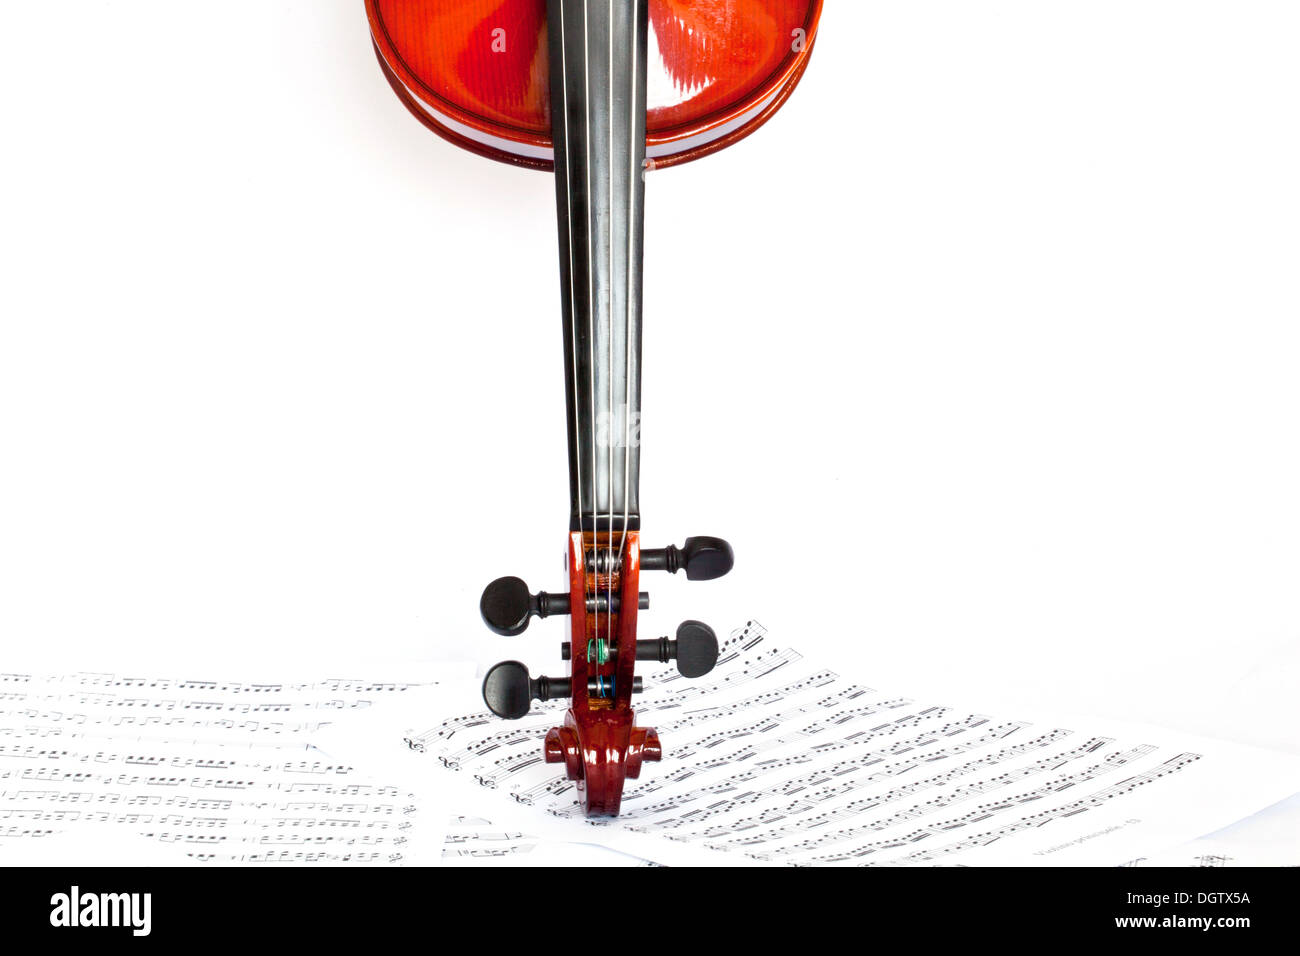 Violine, die isoliert auf weißem Hintergrund Stockfoto